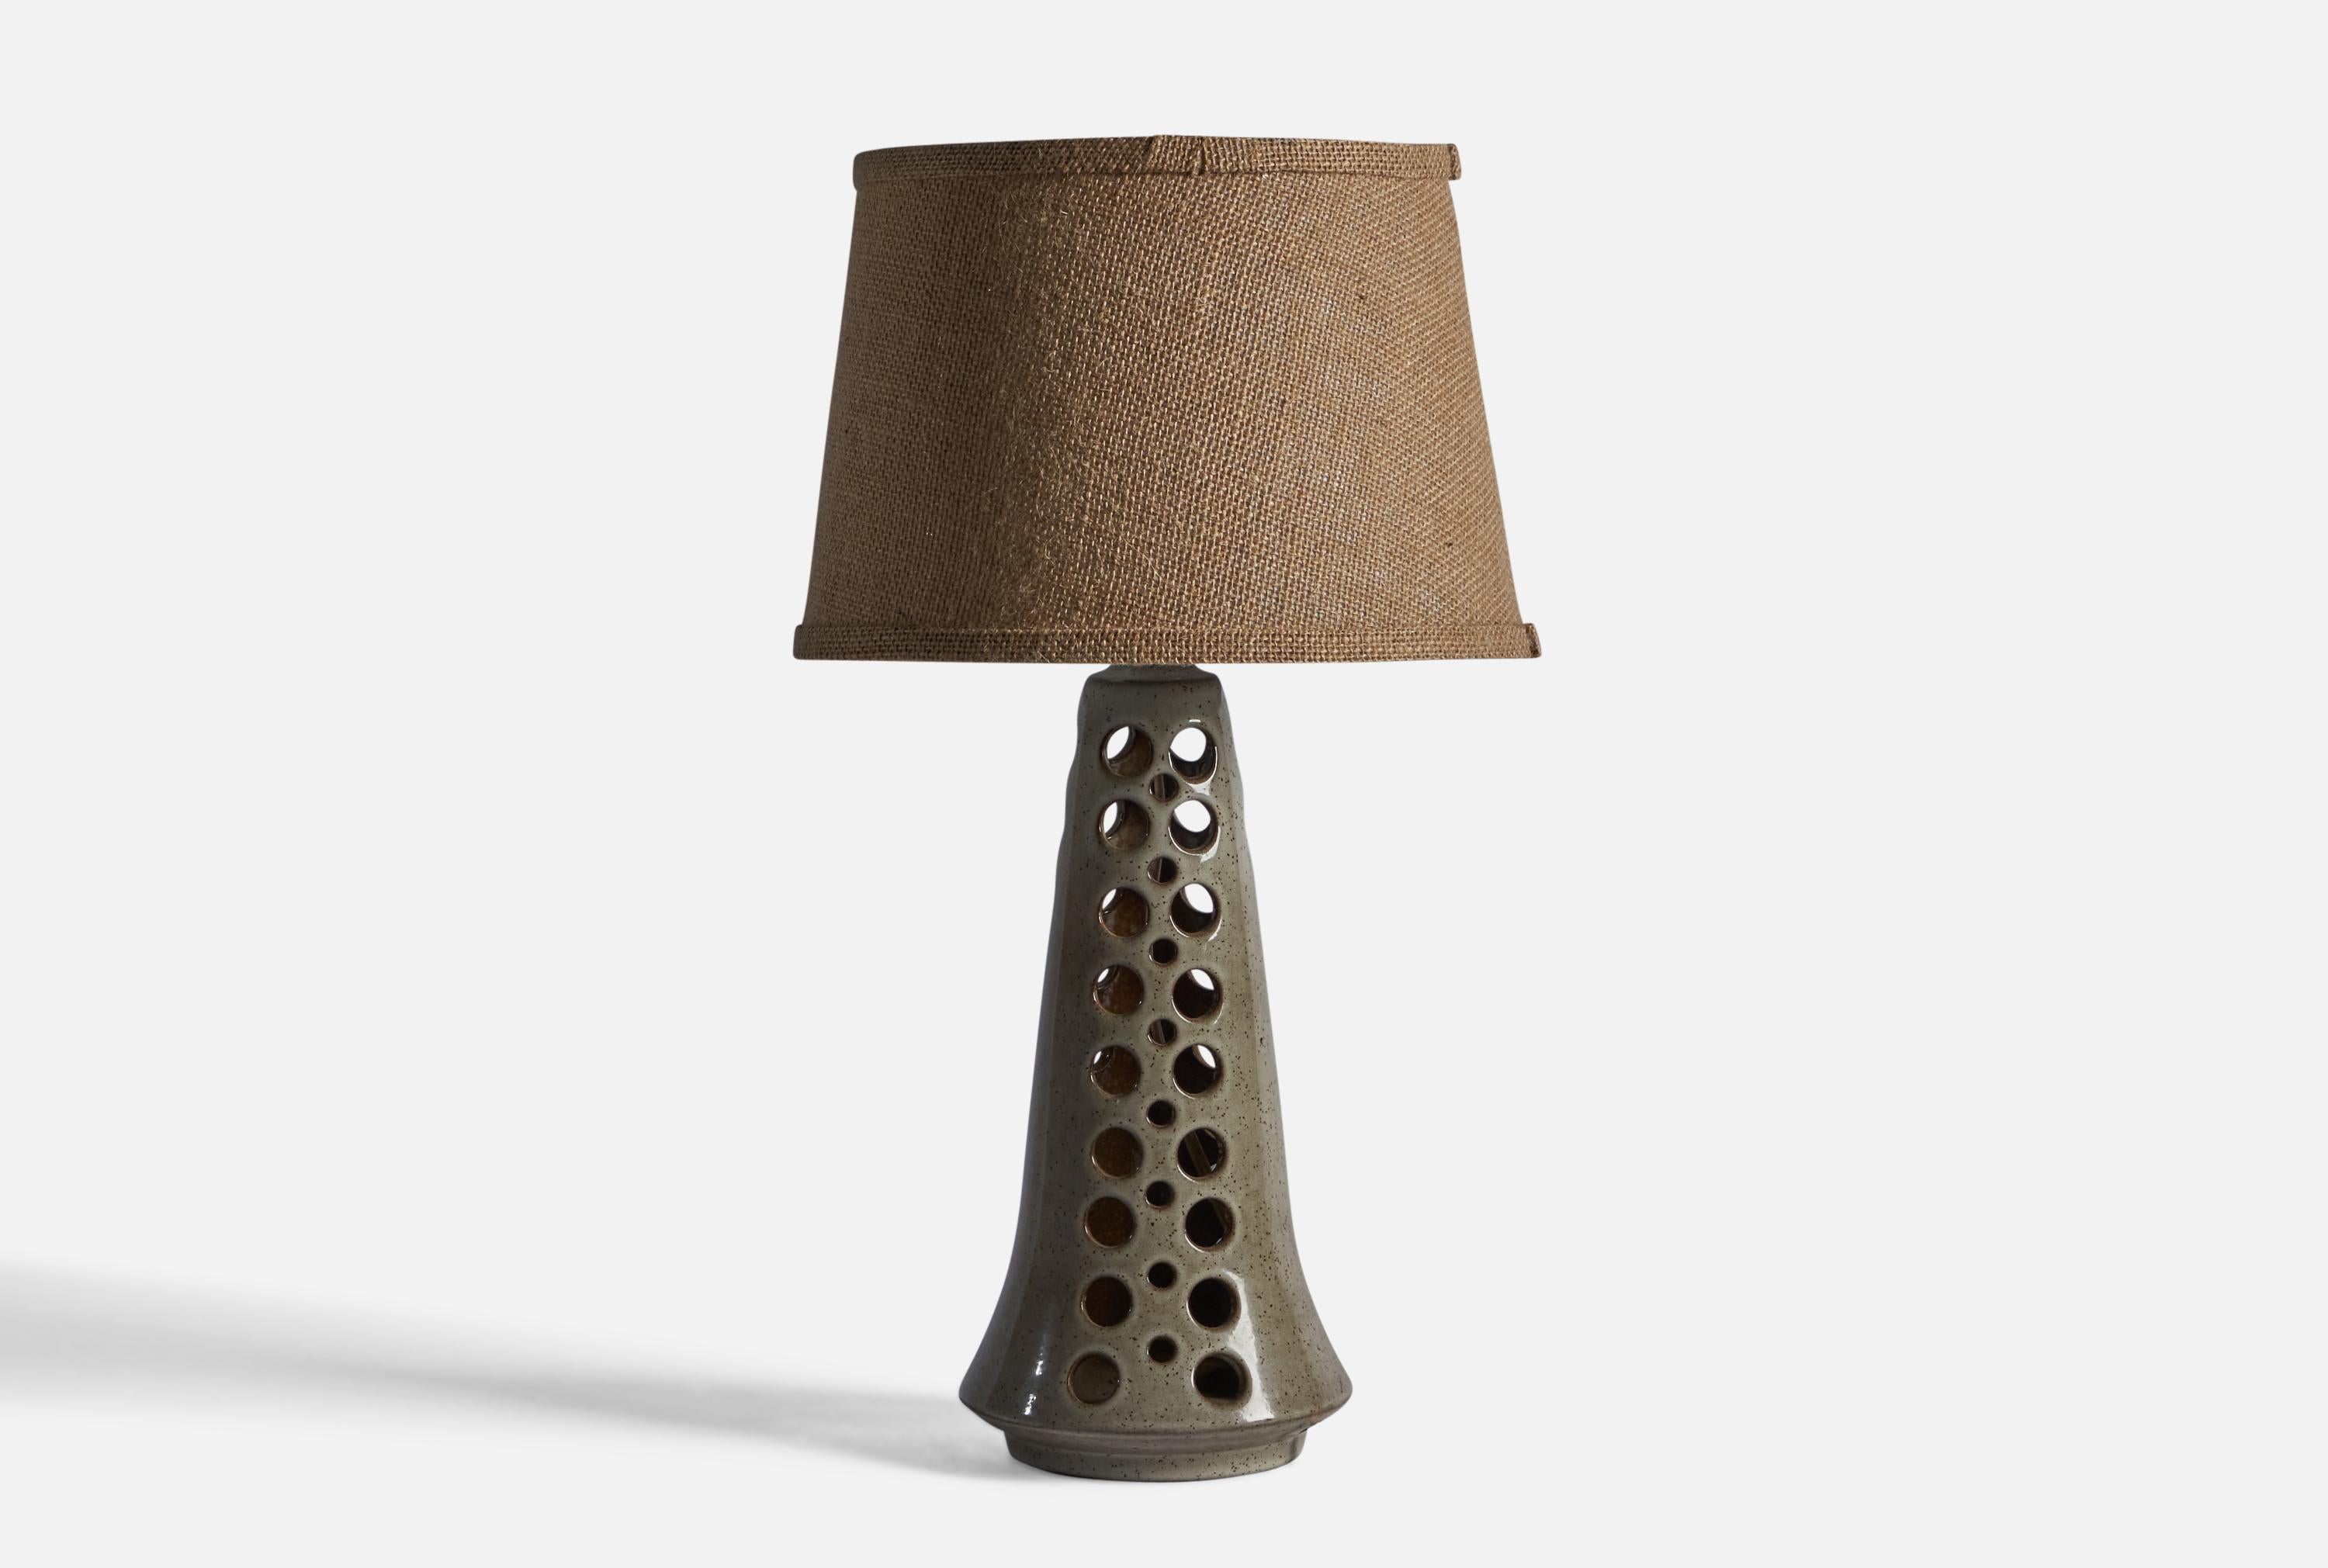 Tischlampe aus grau glasiertem, perforiertem Steingut, entworfen und hergestellt von Michael Andersen, Bornholm, Dänemark, um 1960.

Abmessungen der Lampe (Zoll): 14,75